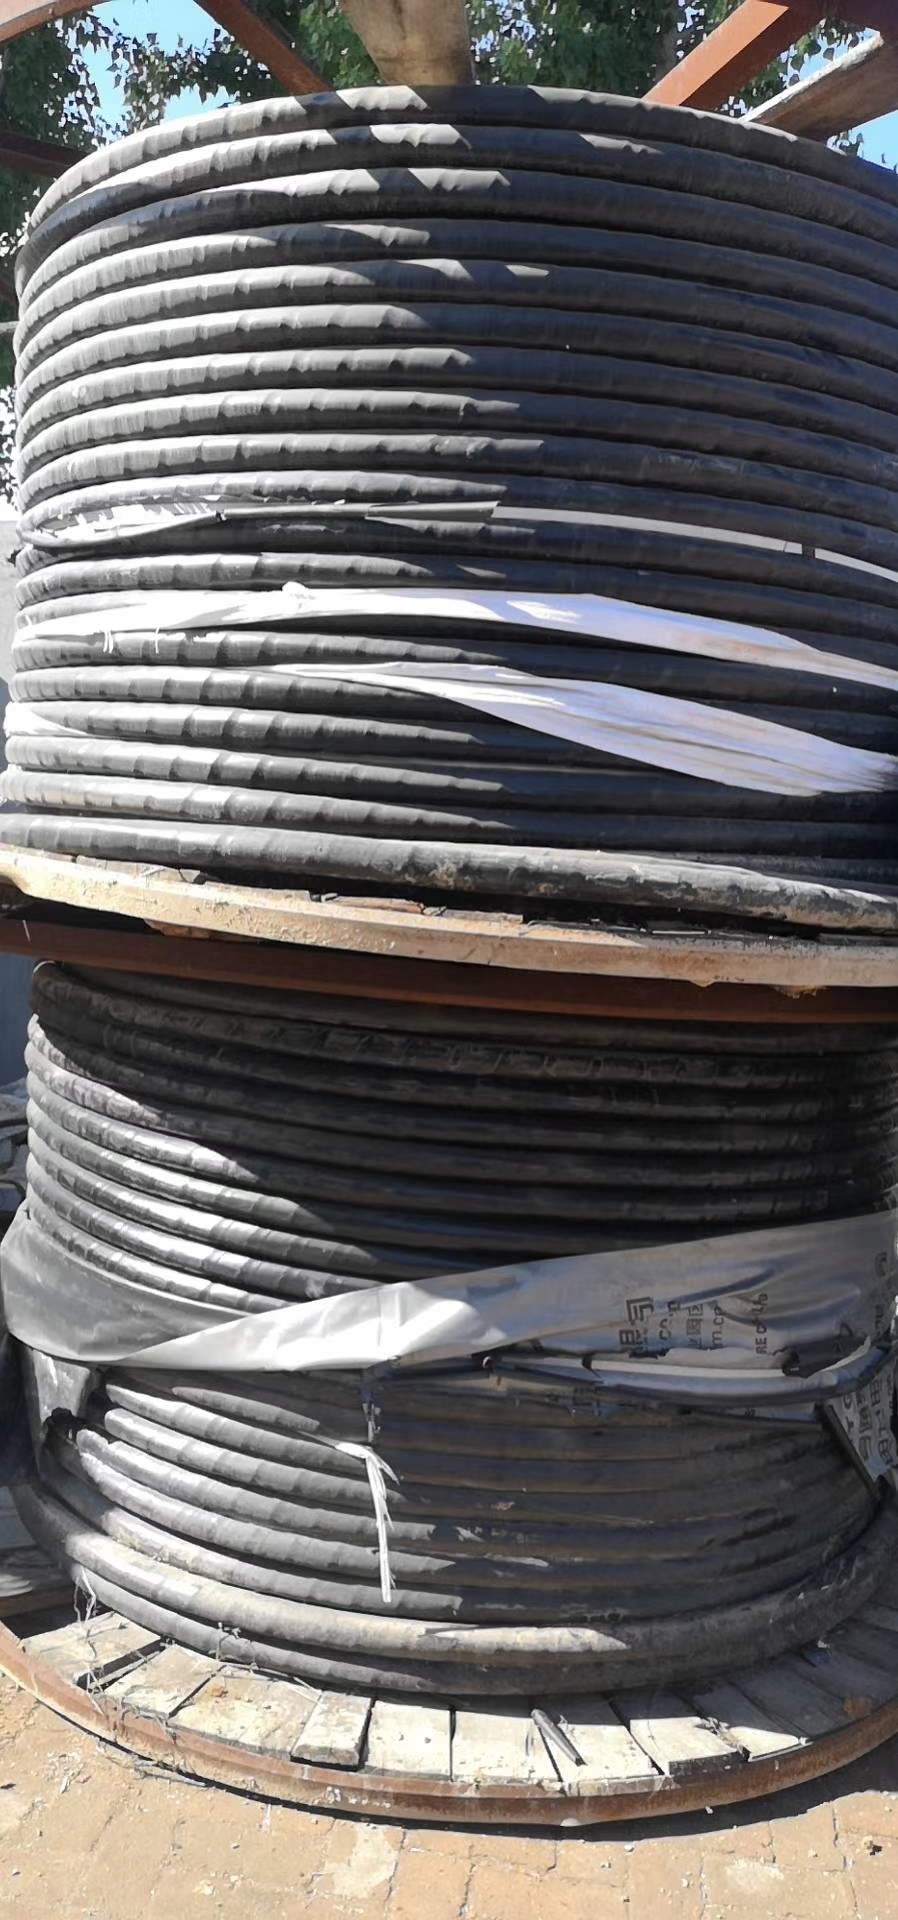 阜阳电缆回收(24小时上门阜阳电缆回收公司 阜阳电缆回收价格)